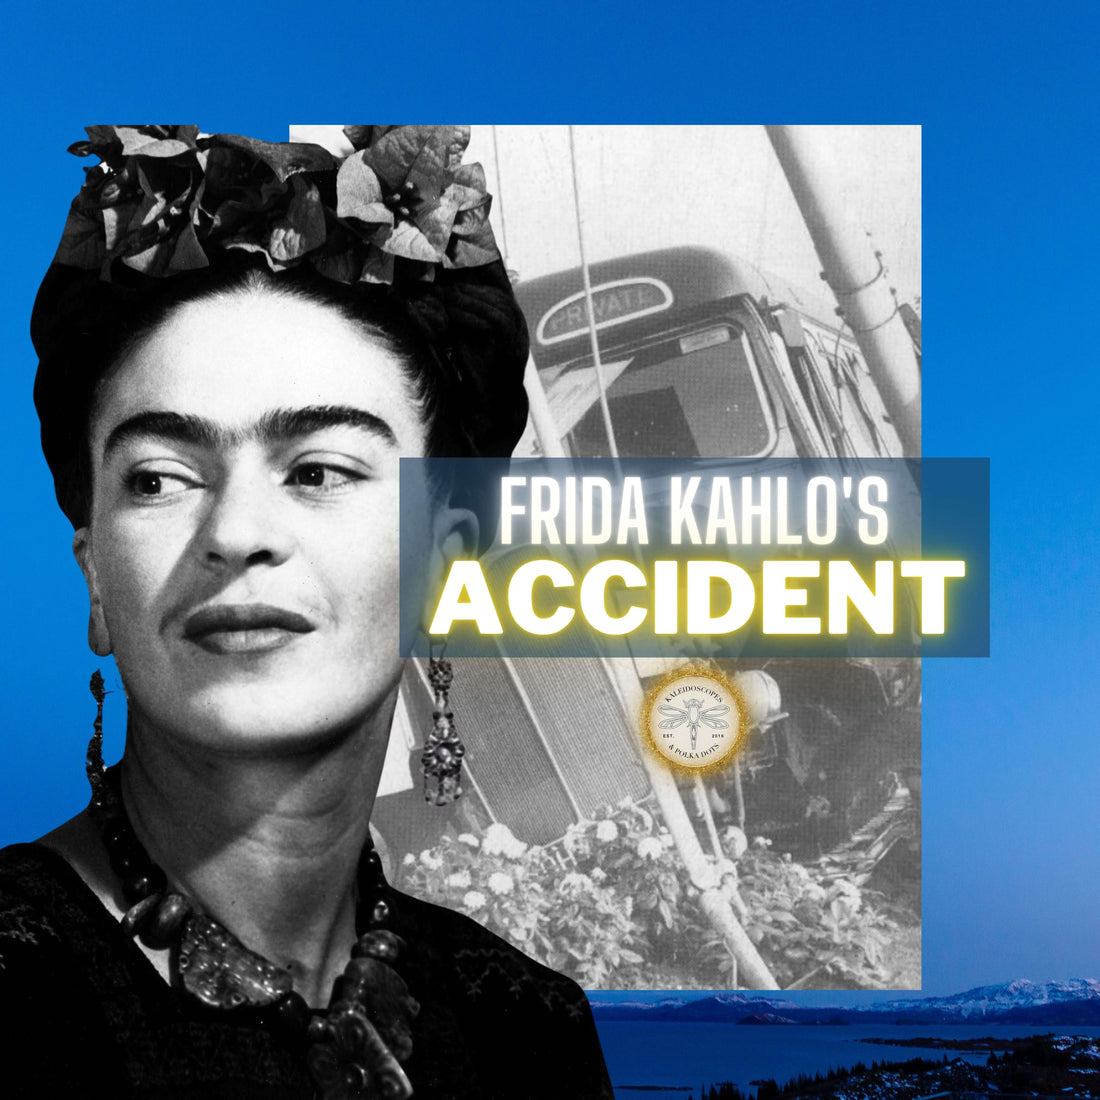 Frida Kahlo Accident - September 17th 1925